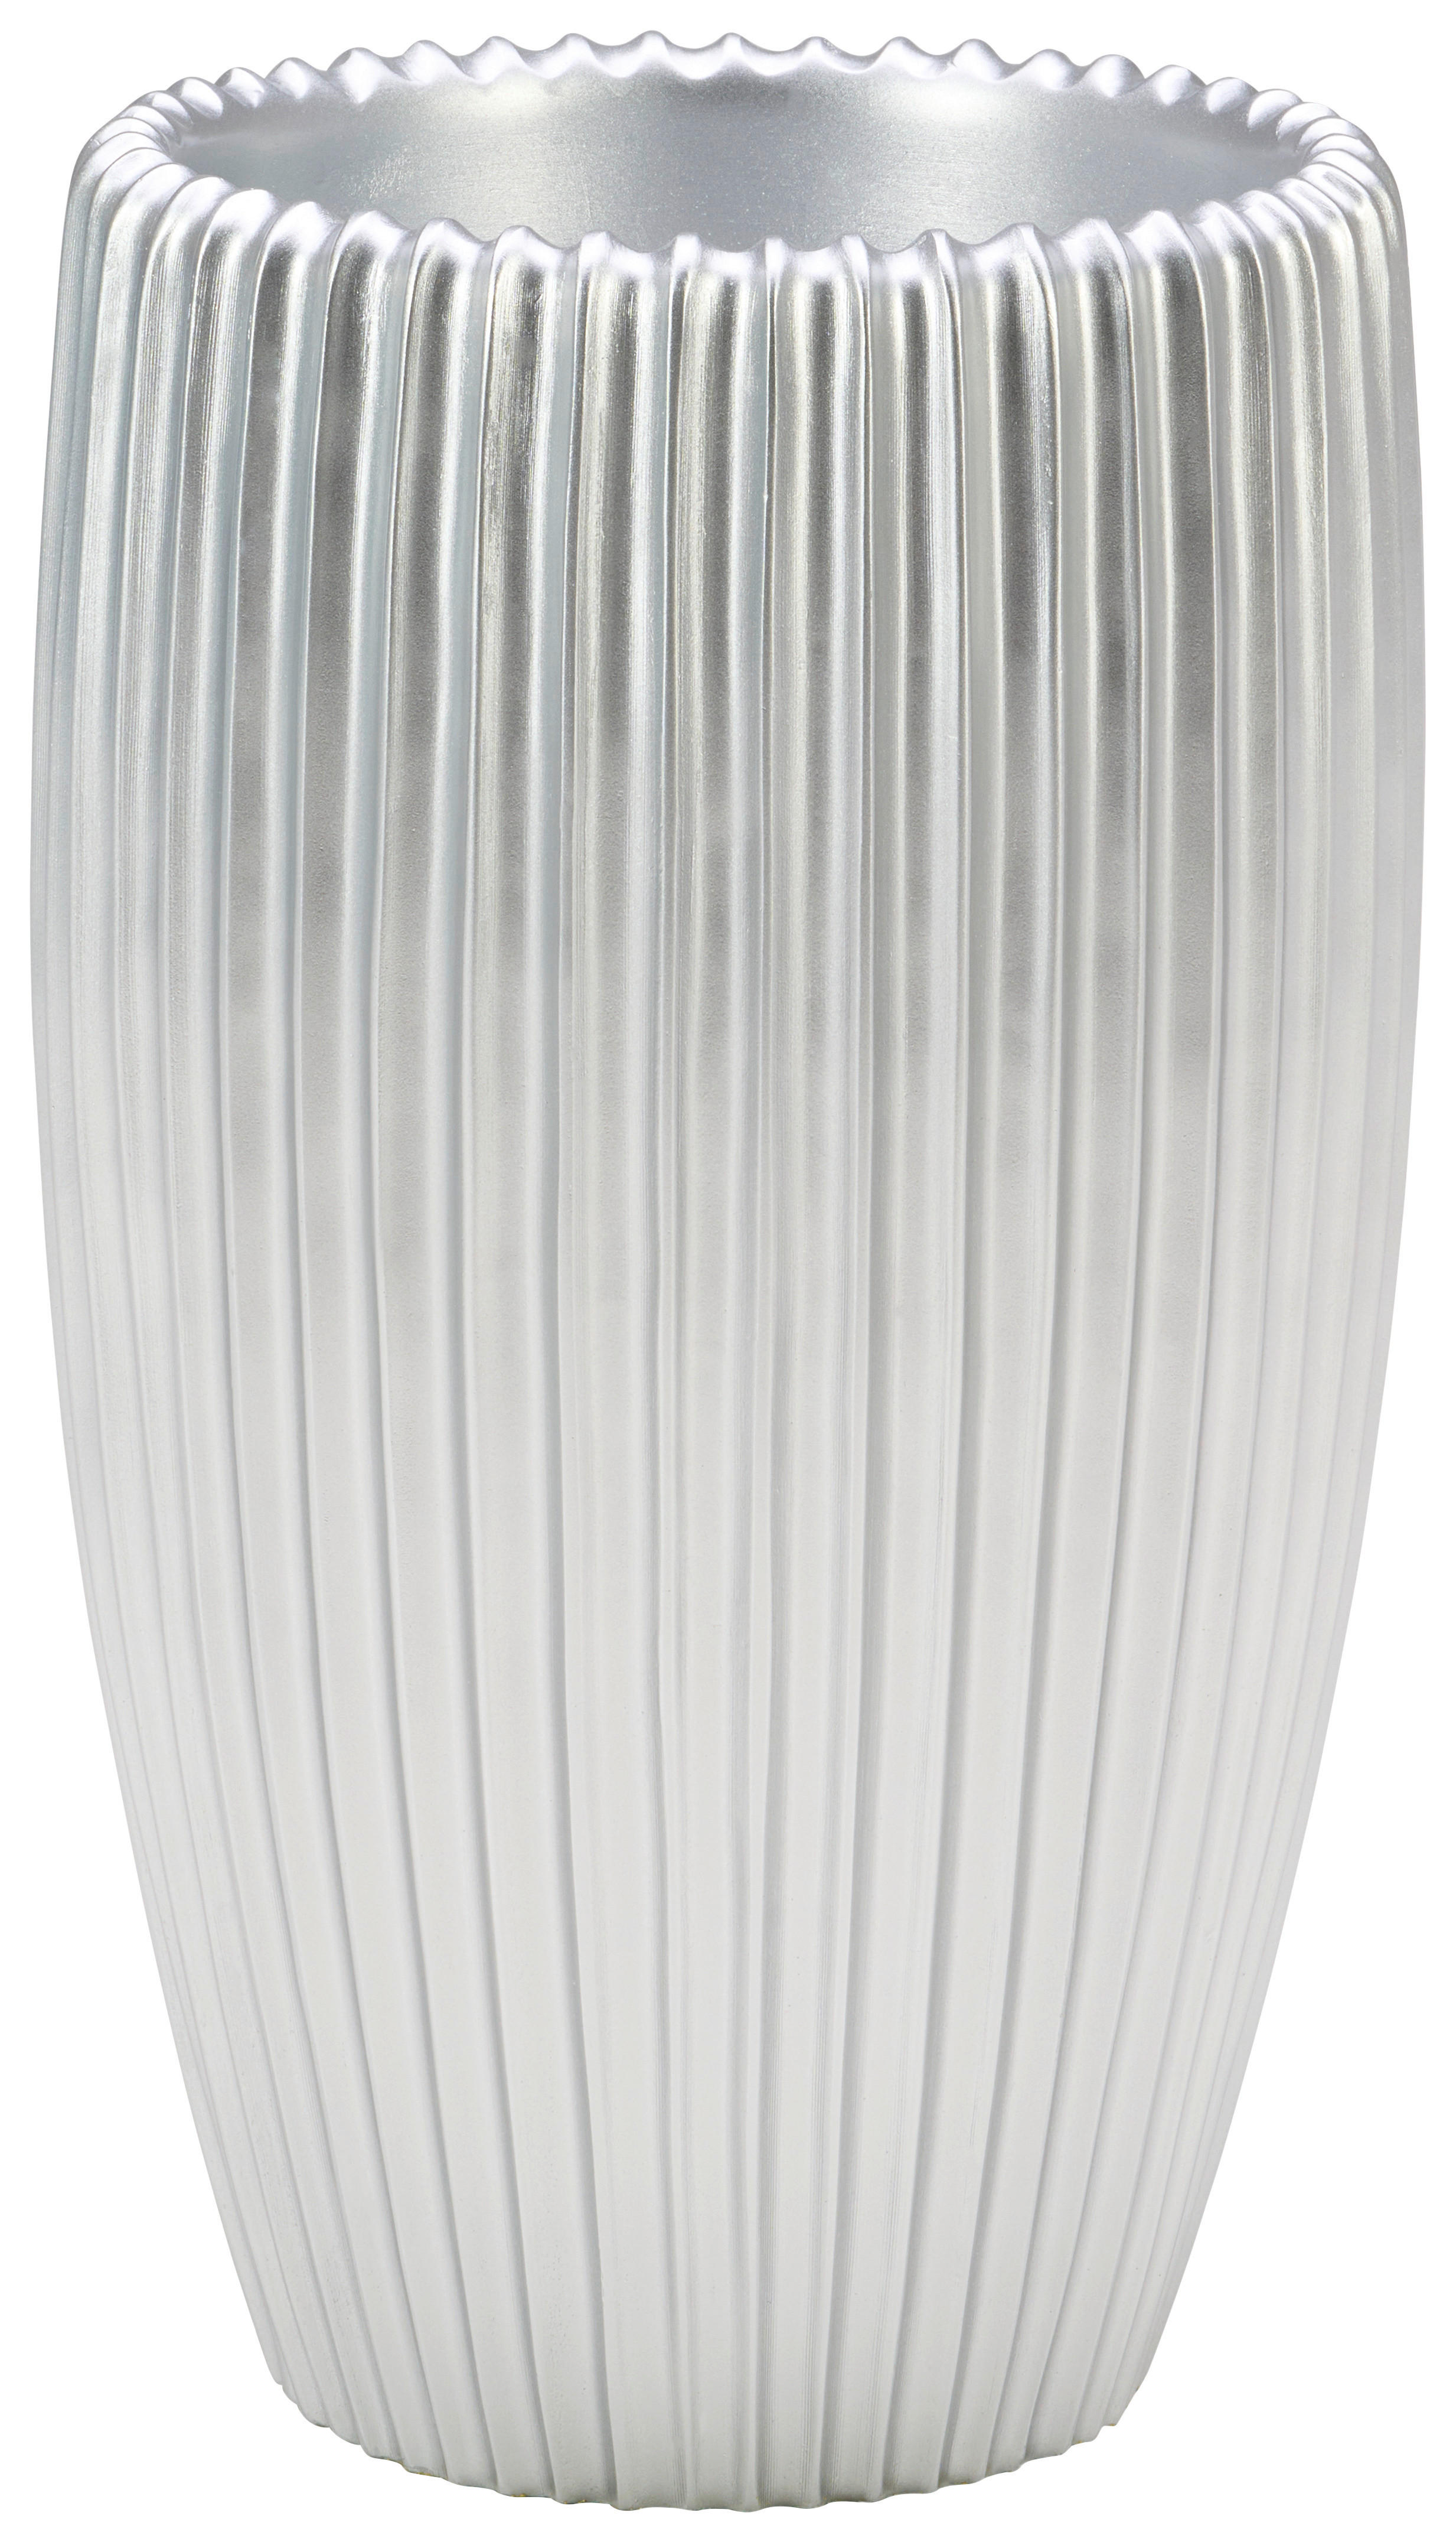 VASE 50 cm  - Silberfarben, Design, Kunststoff (30/50cm) - Ambia Home